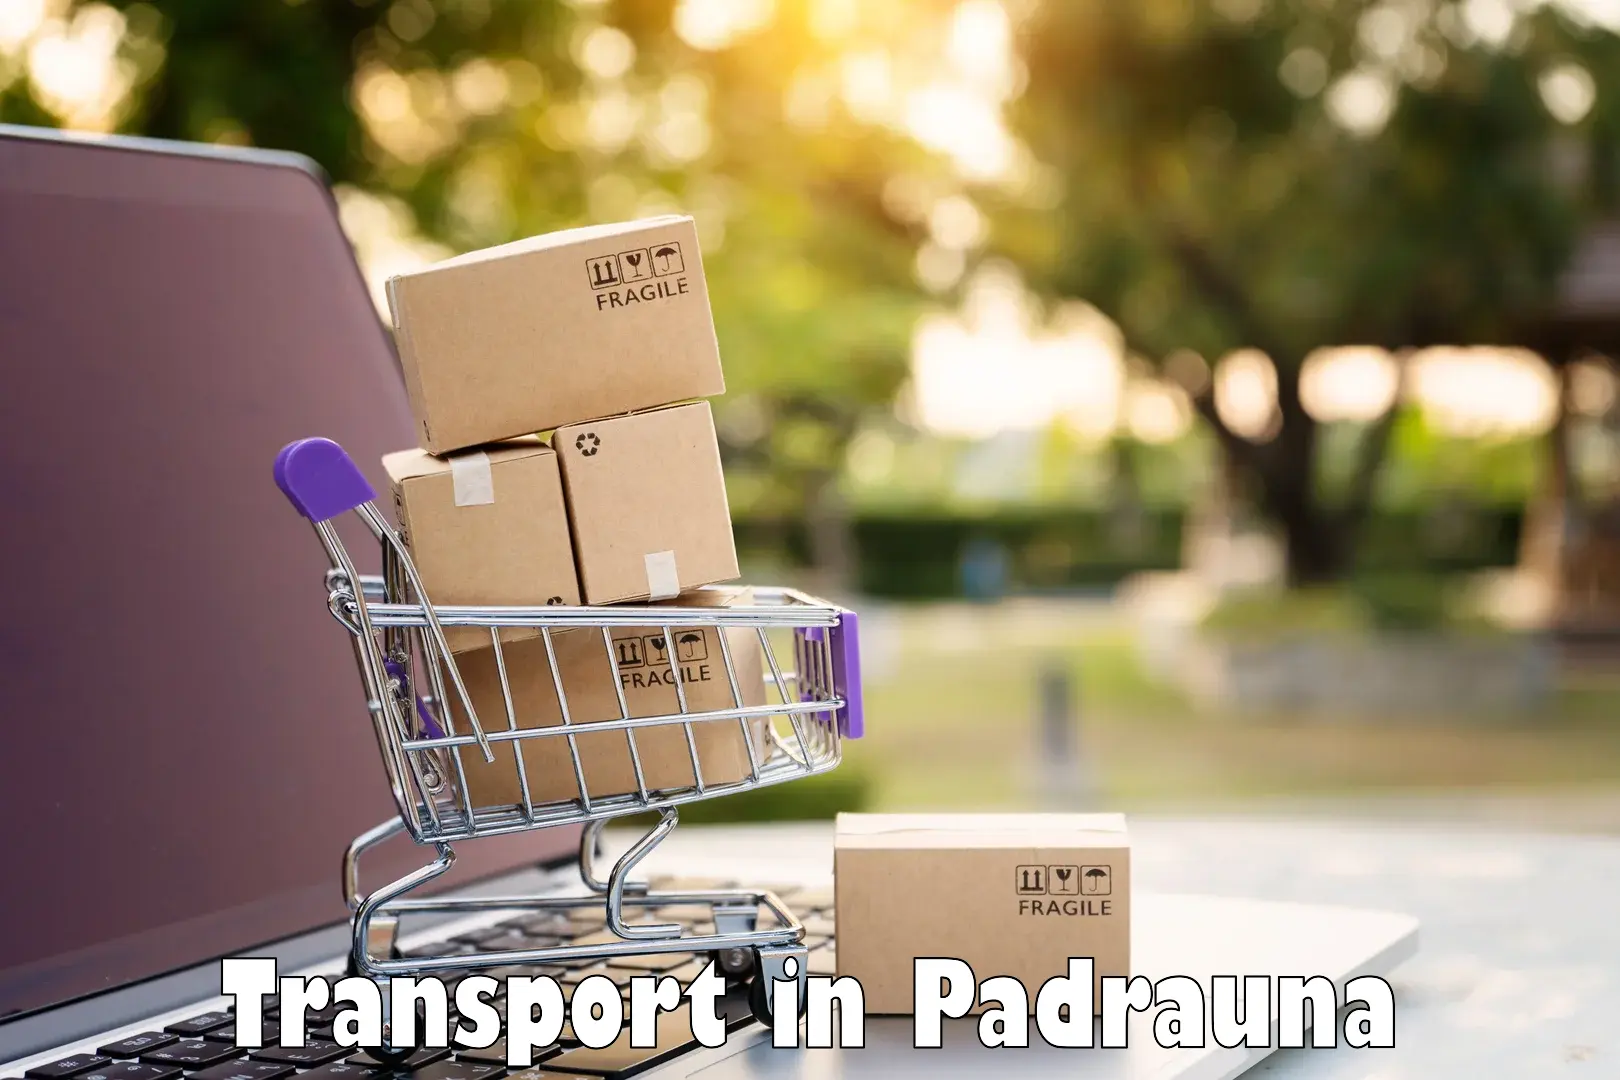 Online transport in Padrauna